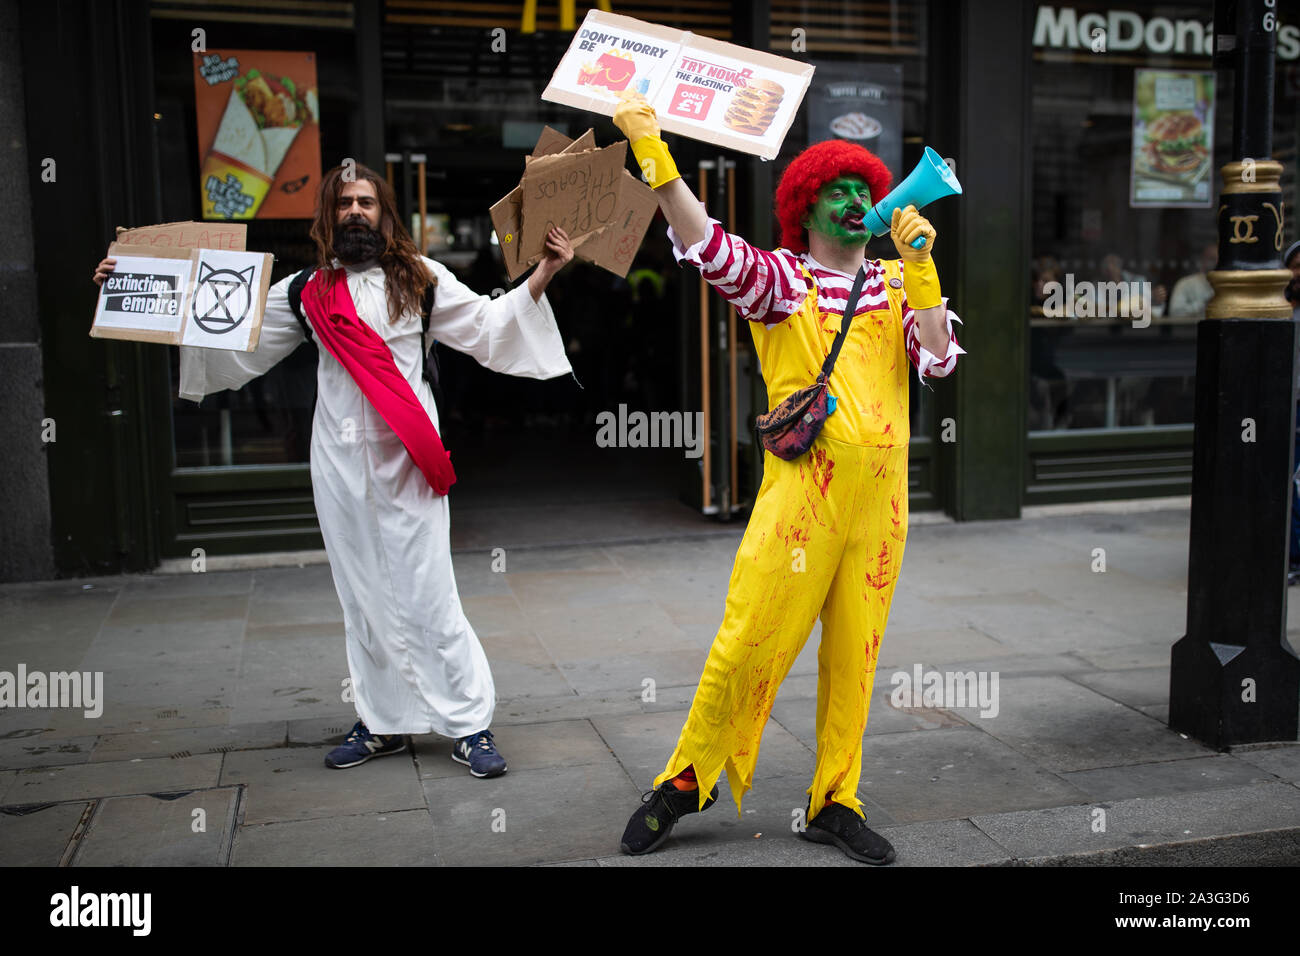 Die Demonstranten gekleidet, wie Jesus und Ronald McDonald außerhalb ein McDonald's Restaurant in der Nähe des Trafalgar Square, London, während ein Aussterben Rebellion (XR) Klimawandel protestieren. Stockfoto